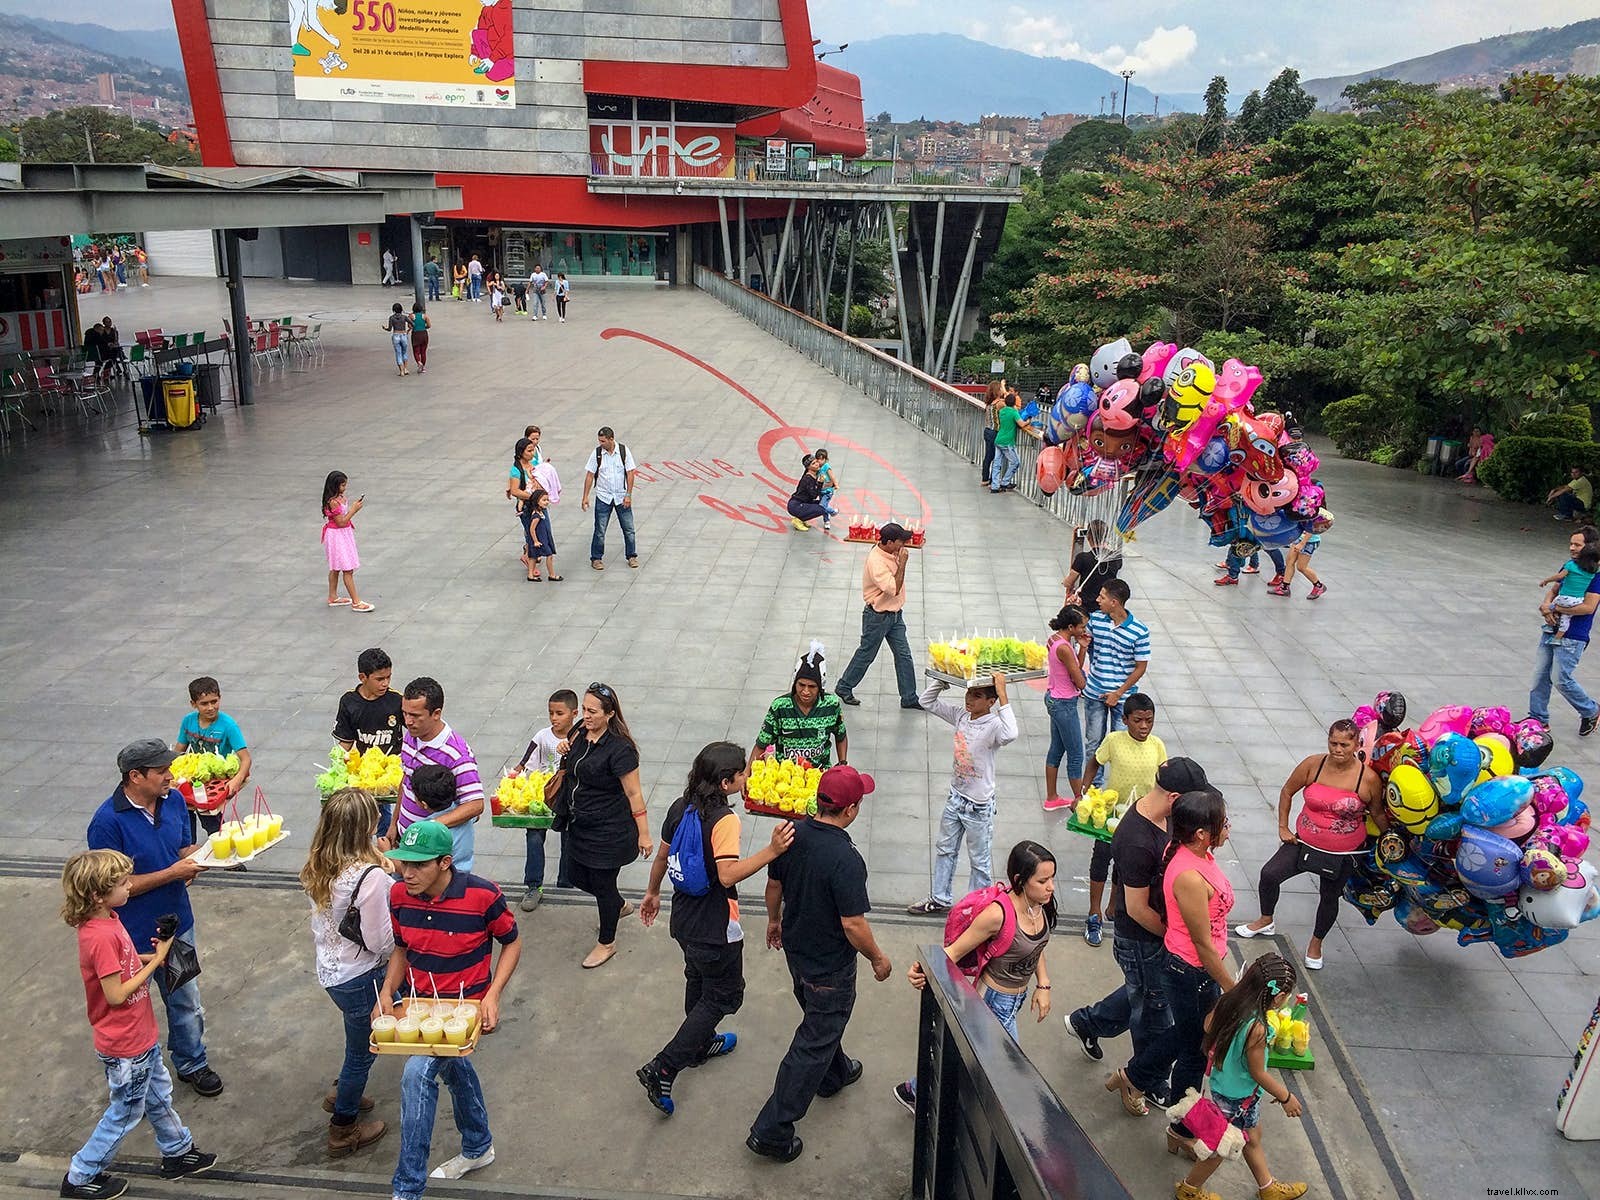 Cinq raisons de visiter Medellín dès maintenant 